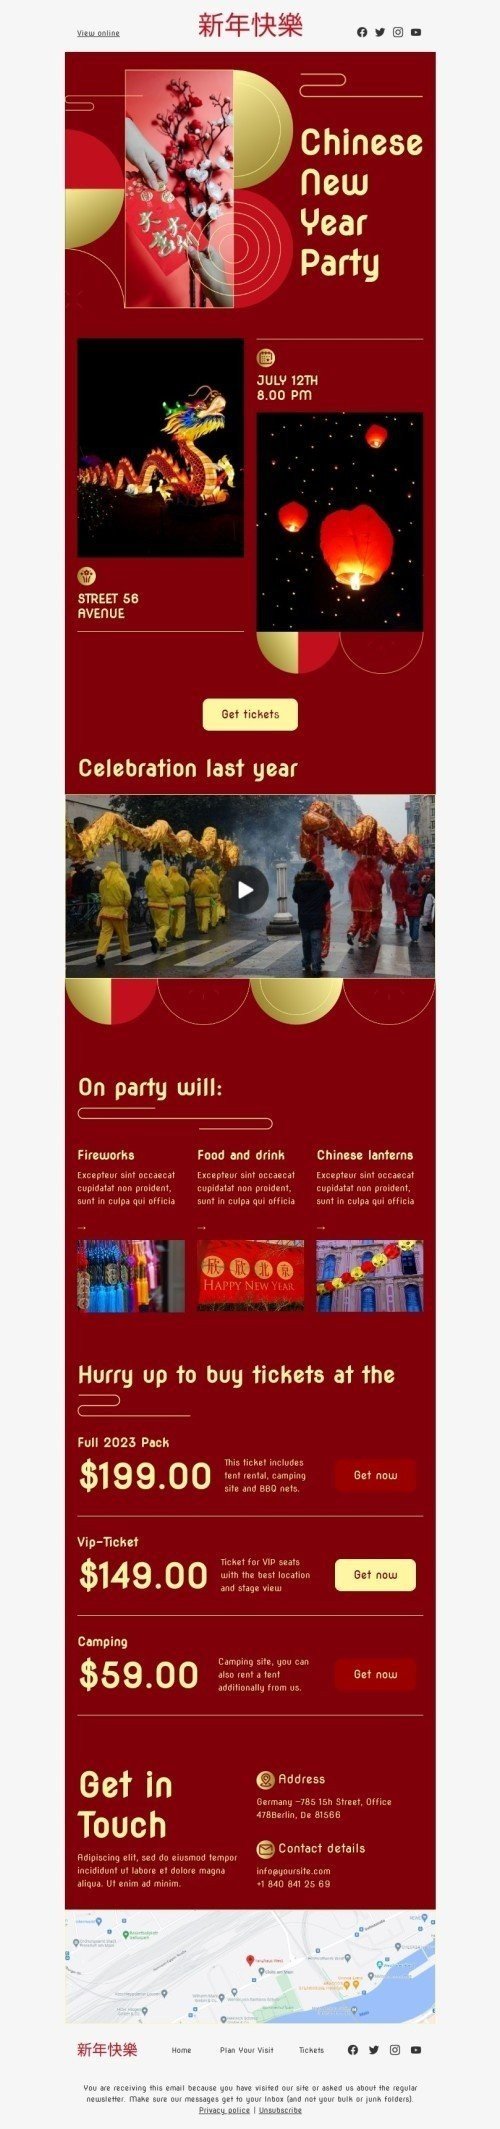 Шаблон листа до свята китайський Новий рік «Китайська новорічна вечірка» для індустрії «Захоплення» мобільний вигляд